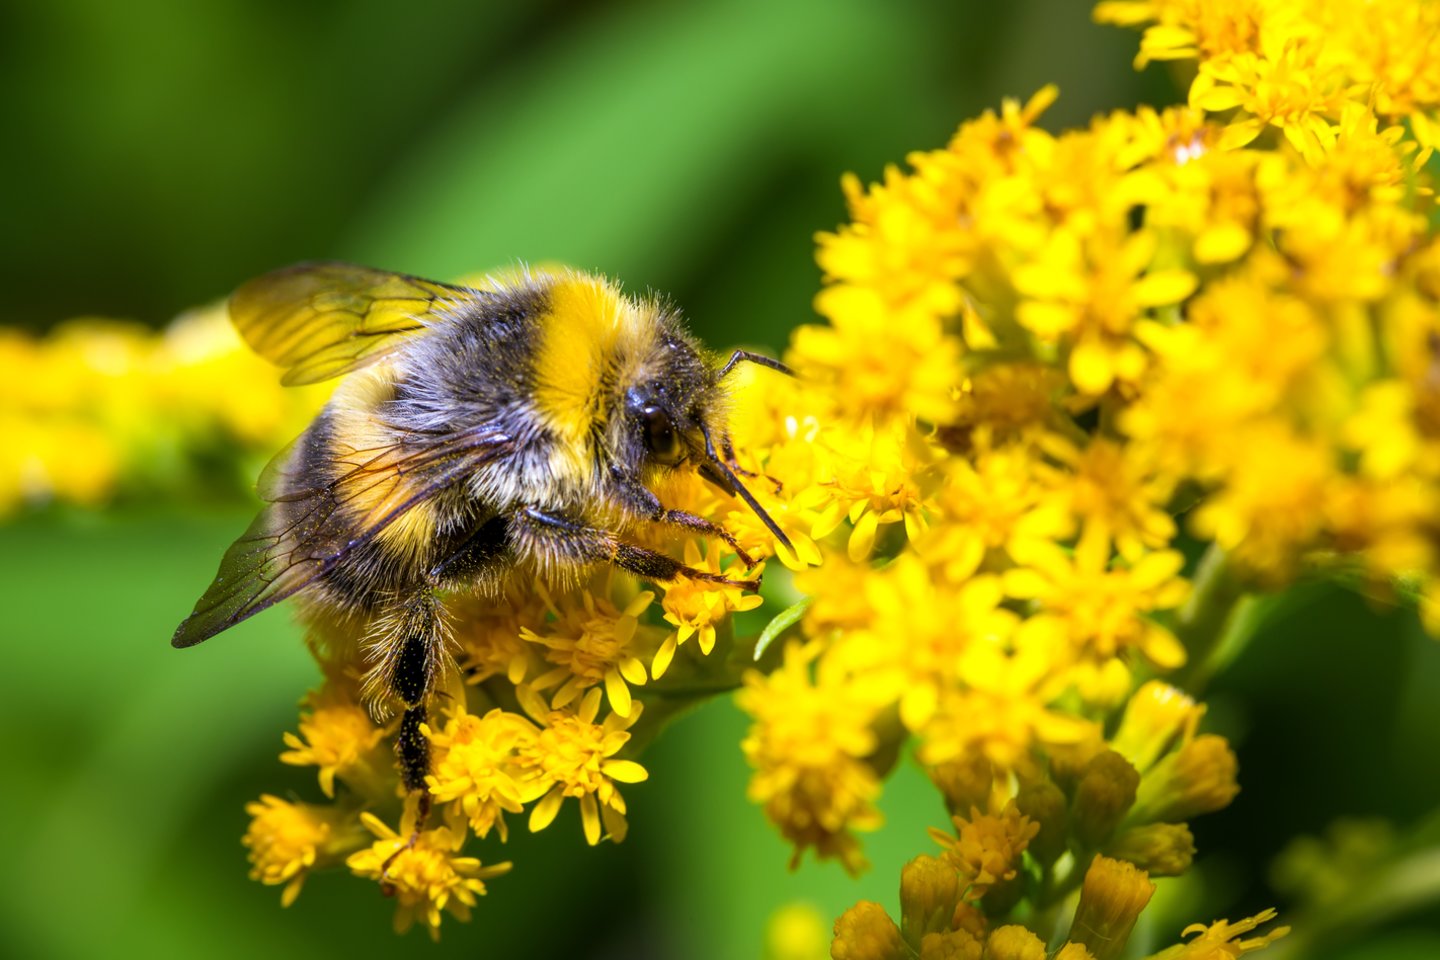  Kamanės, kaip ir visos bitės, žmonių soduose yra laukiamas svečias.<br> 123RF nuotr.